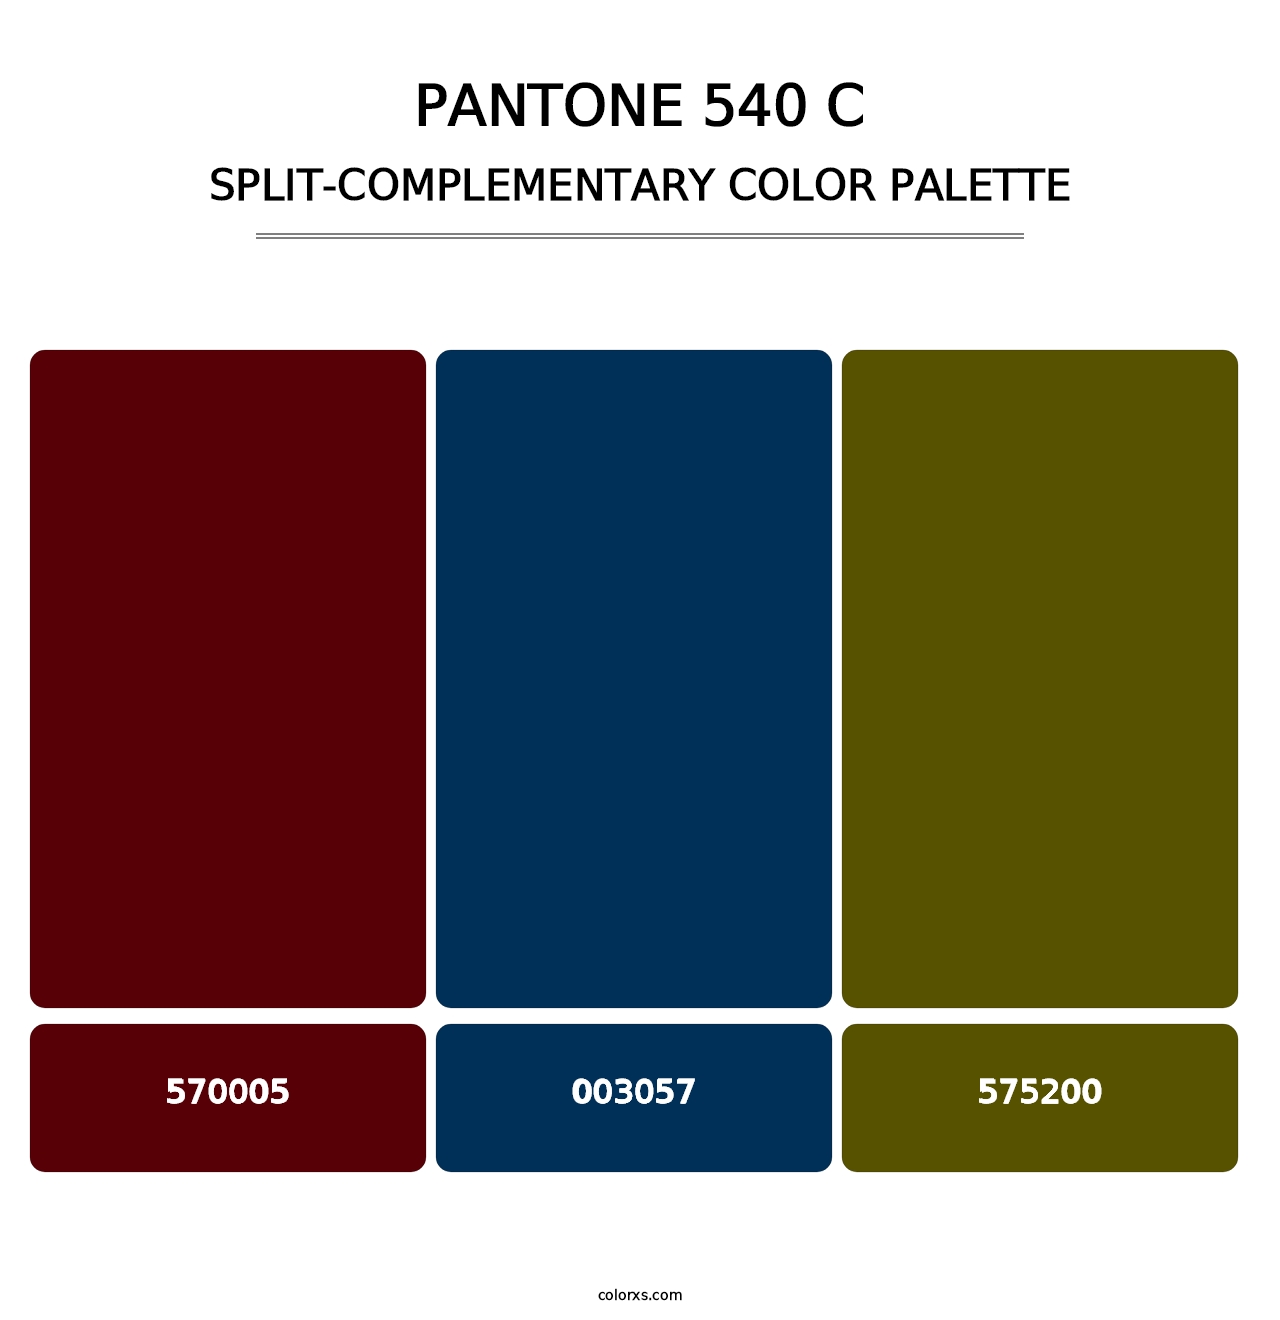 PANTONE 540 C - Split-Complementary Color Palette